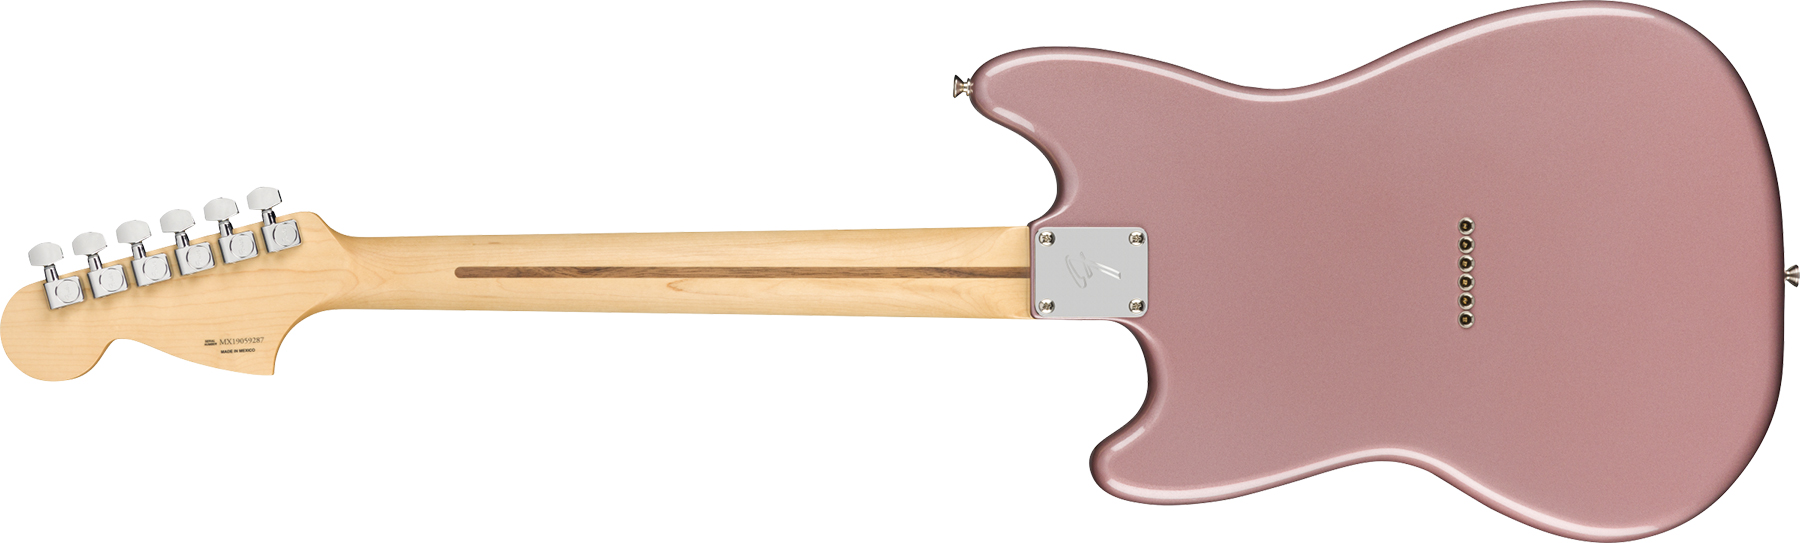 Fender Mustang Player 90 Mex Ht 2p90 Pf - Burgundy Mist Metallic - Guitare Électrique RÉtro Rock - Variation 1